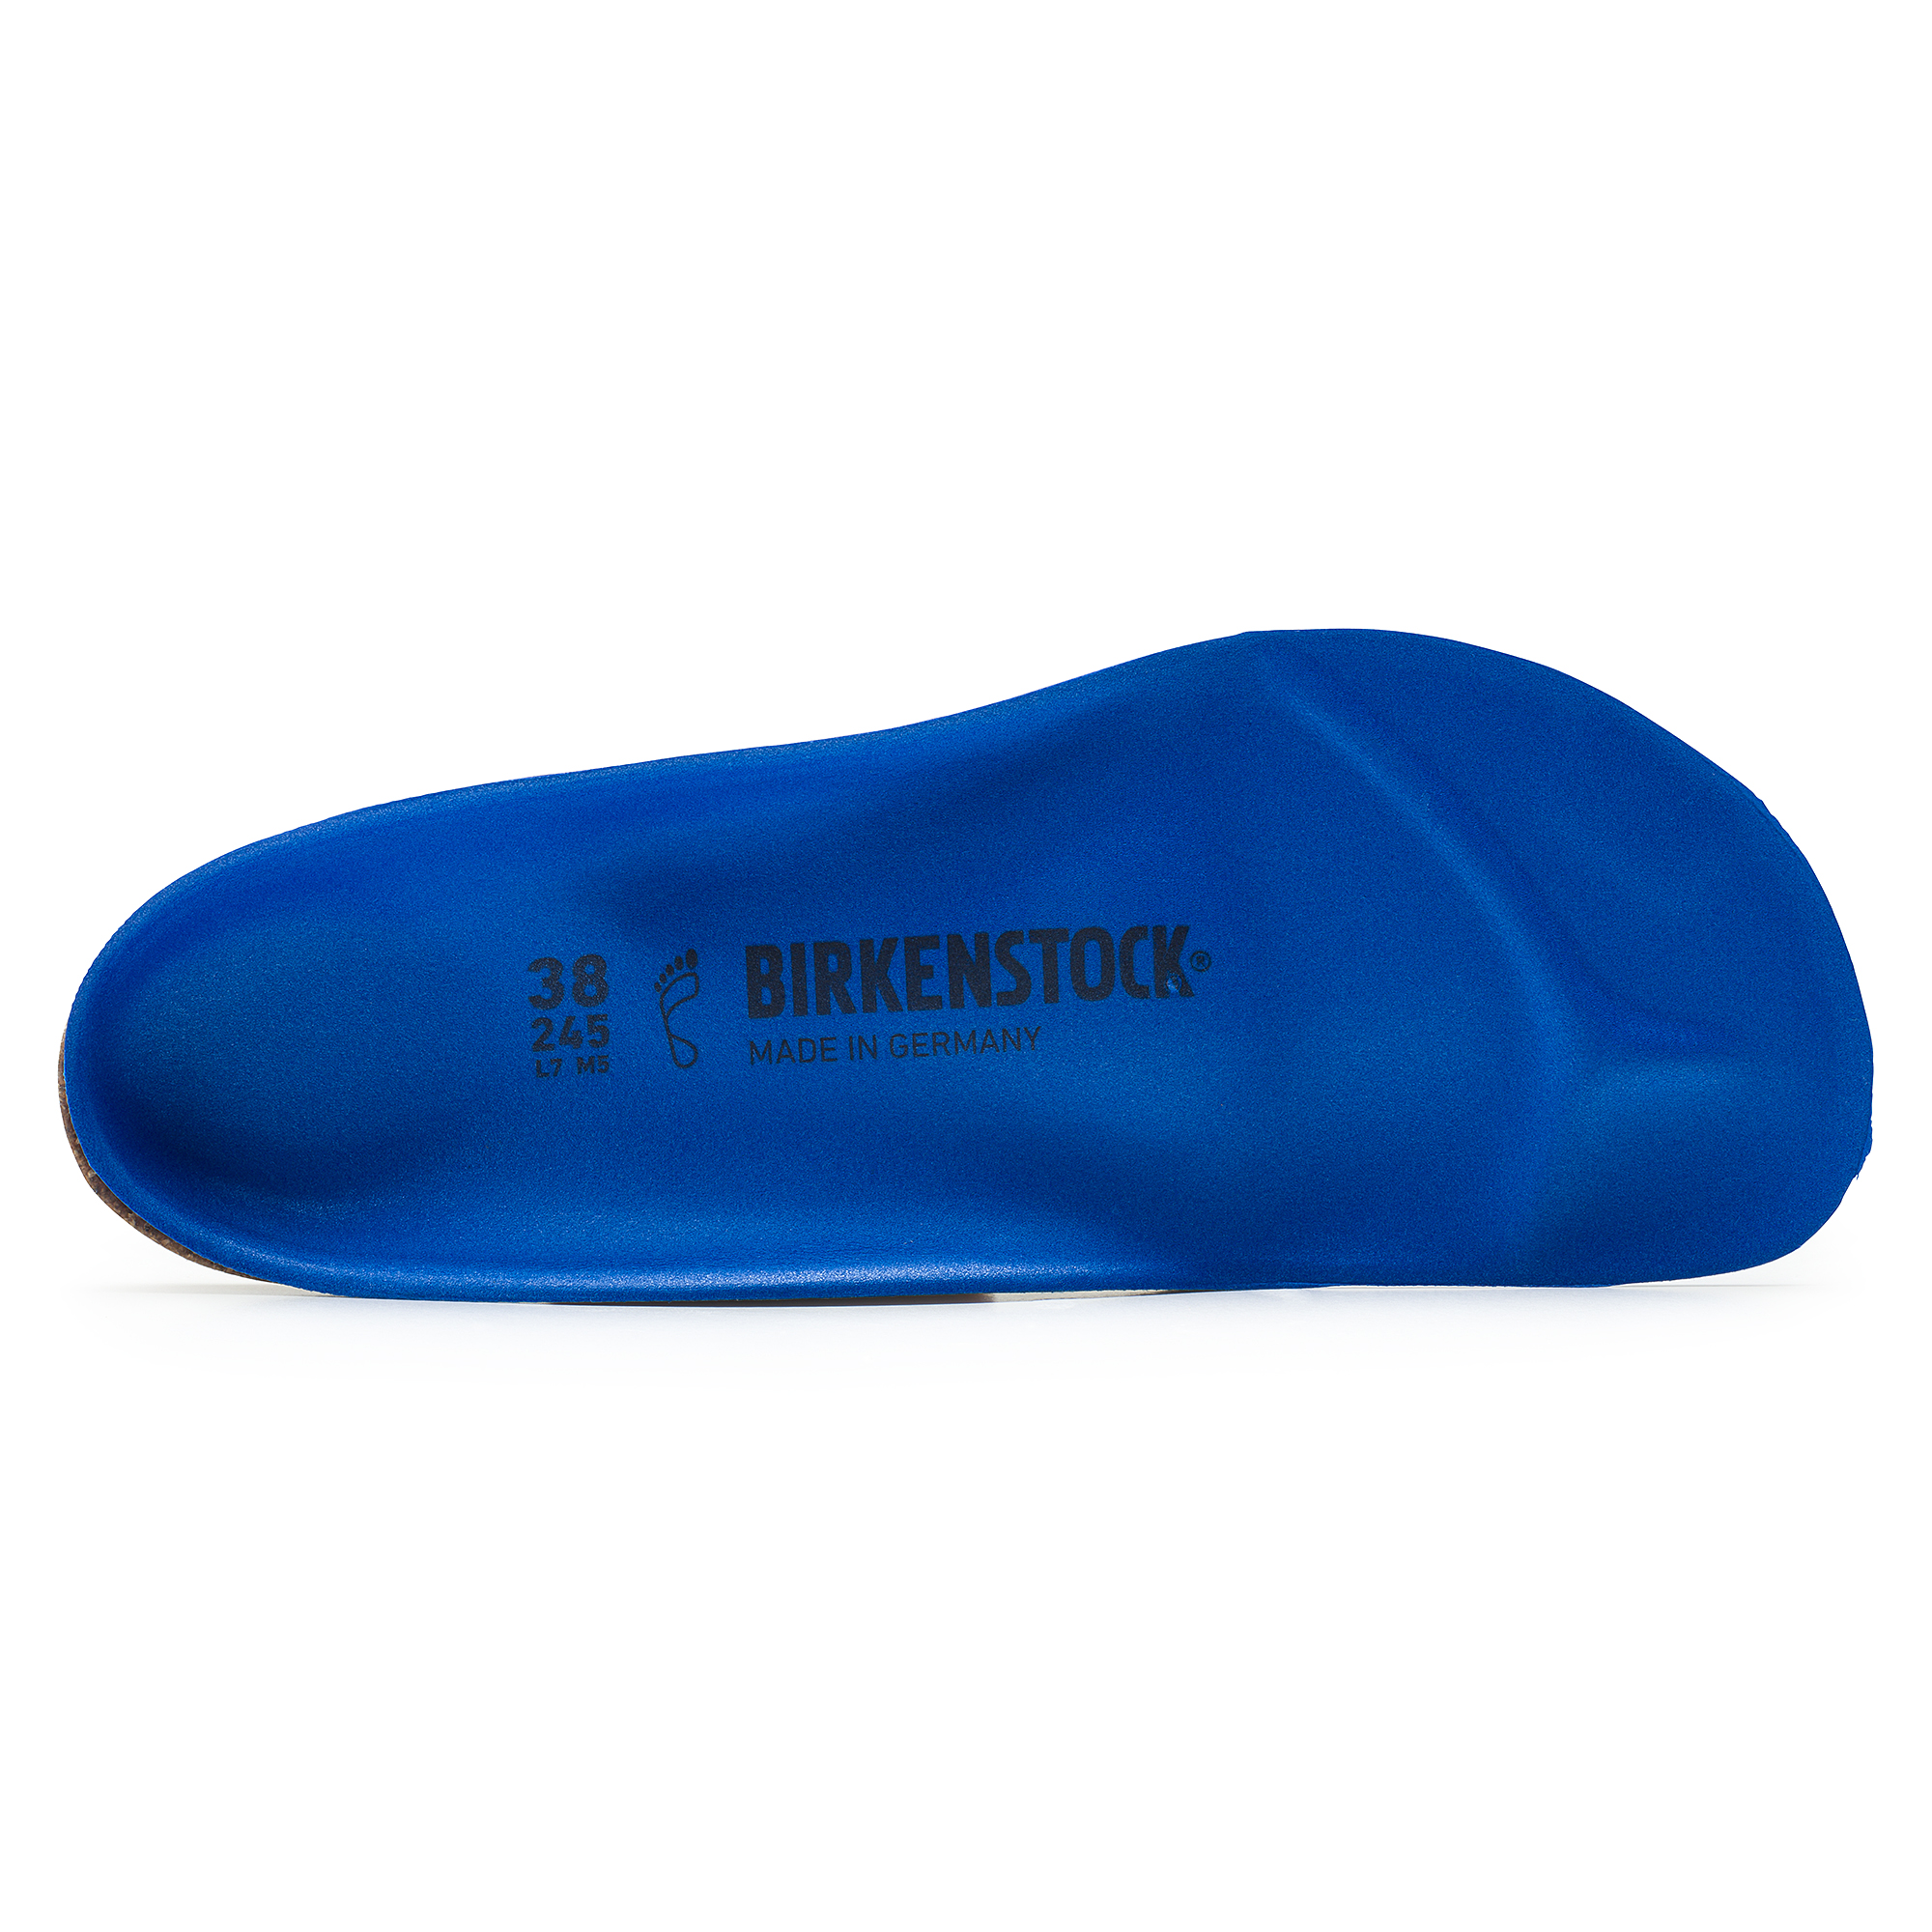 birkenstock sport insoles